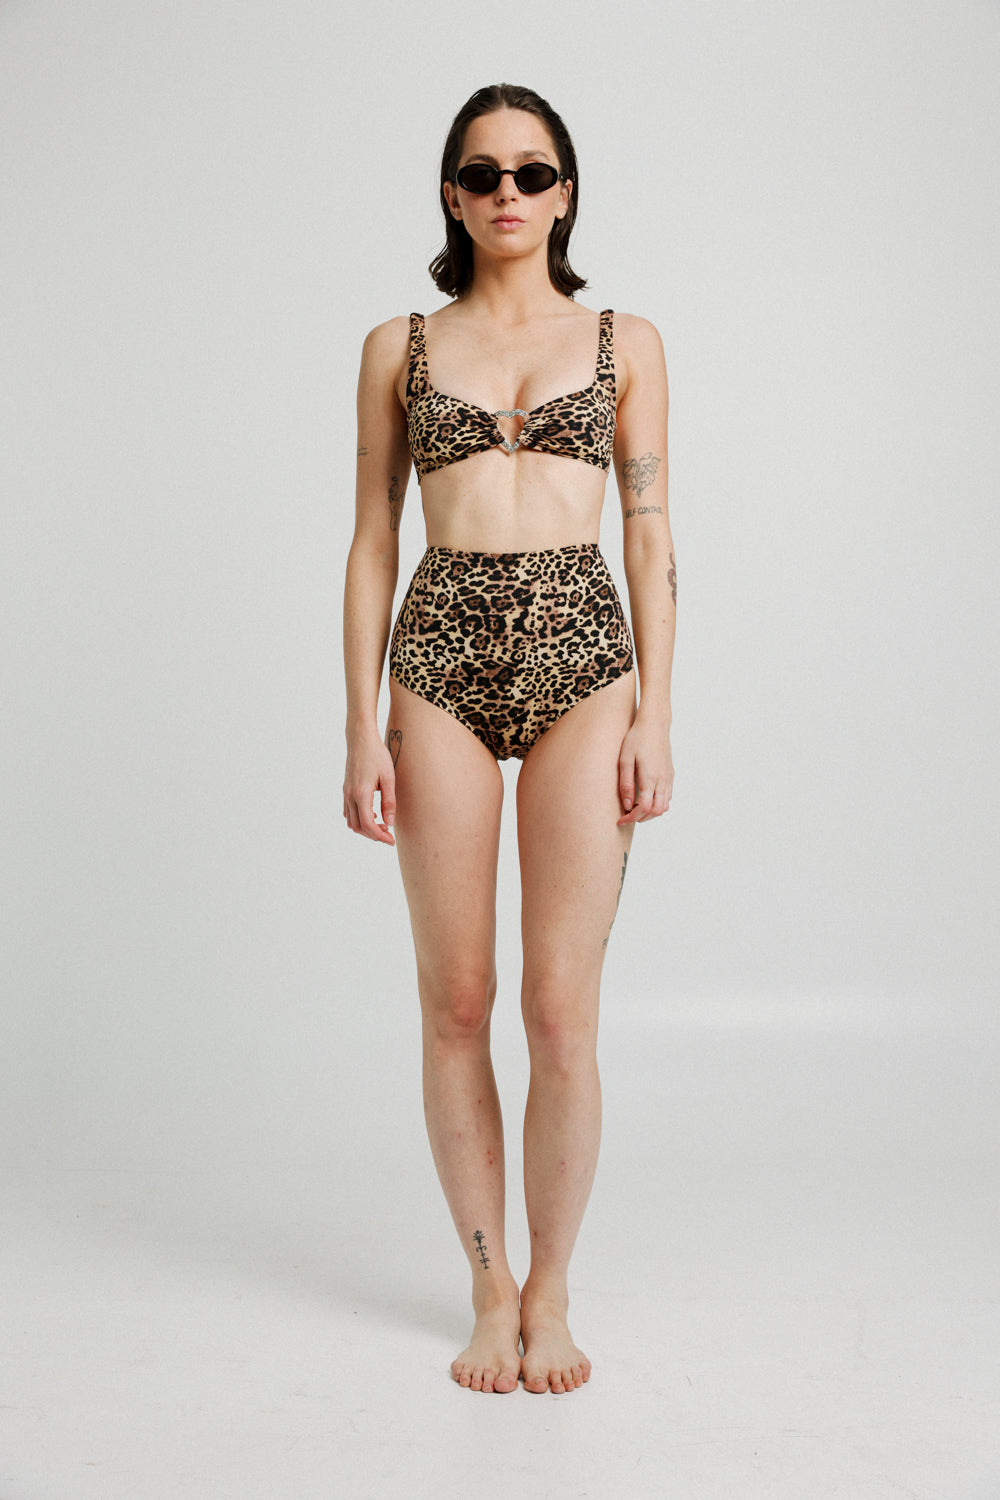 A Leopard Bikini Bottoms